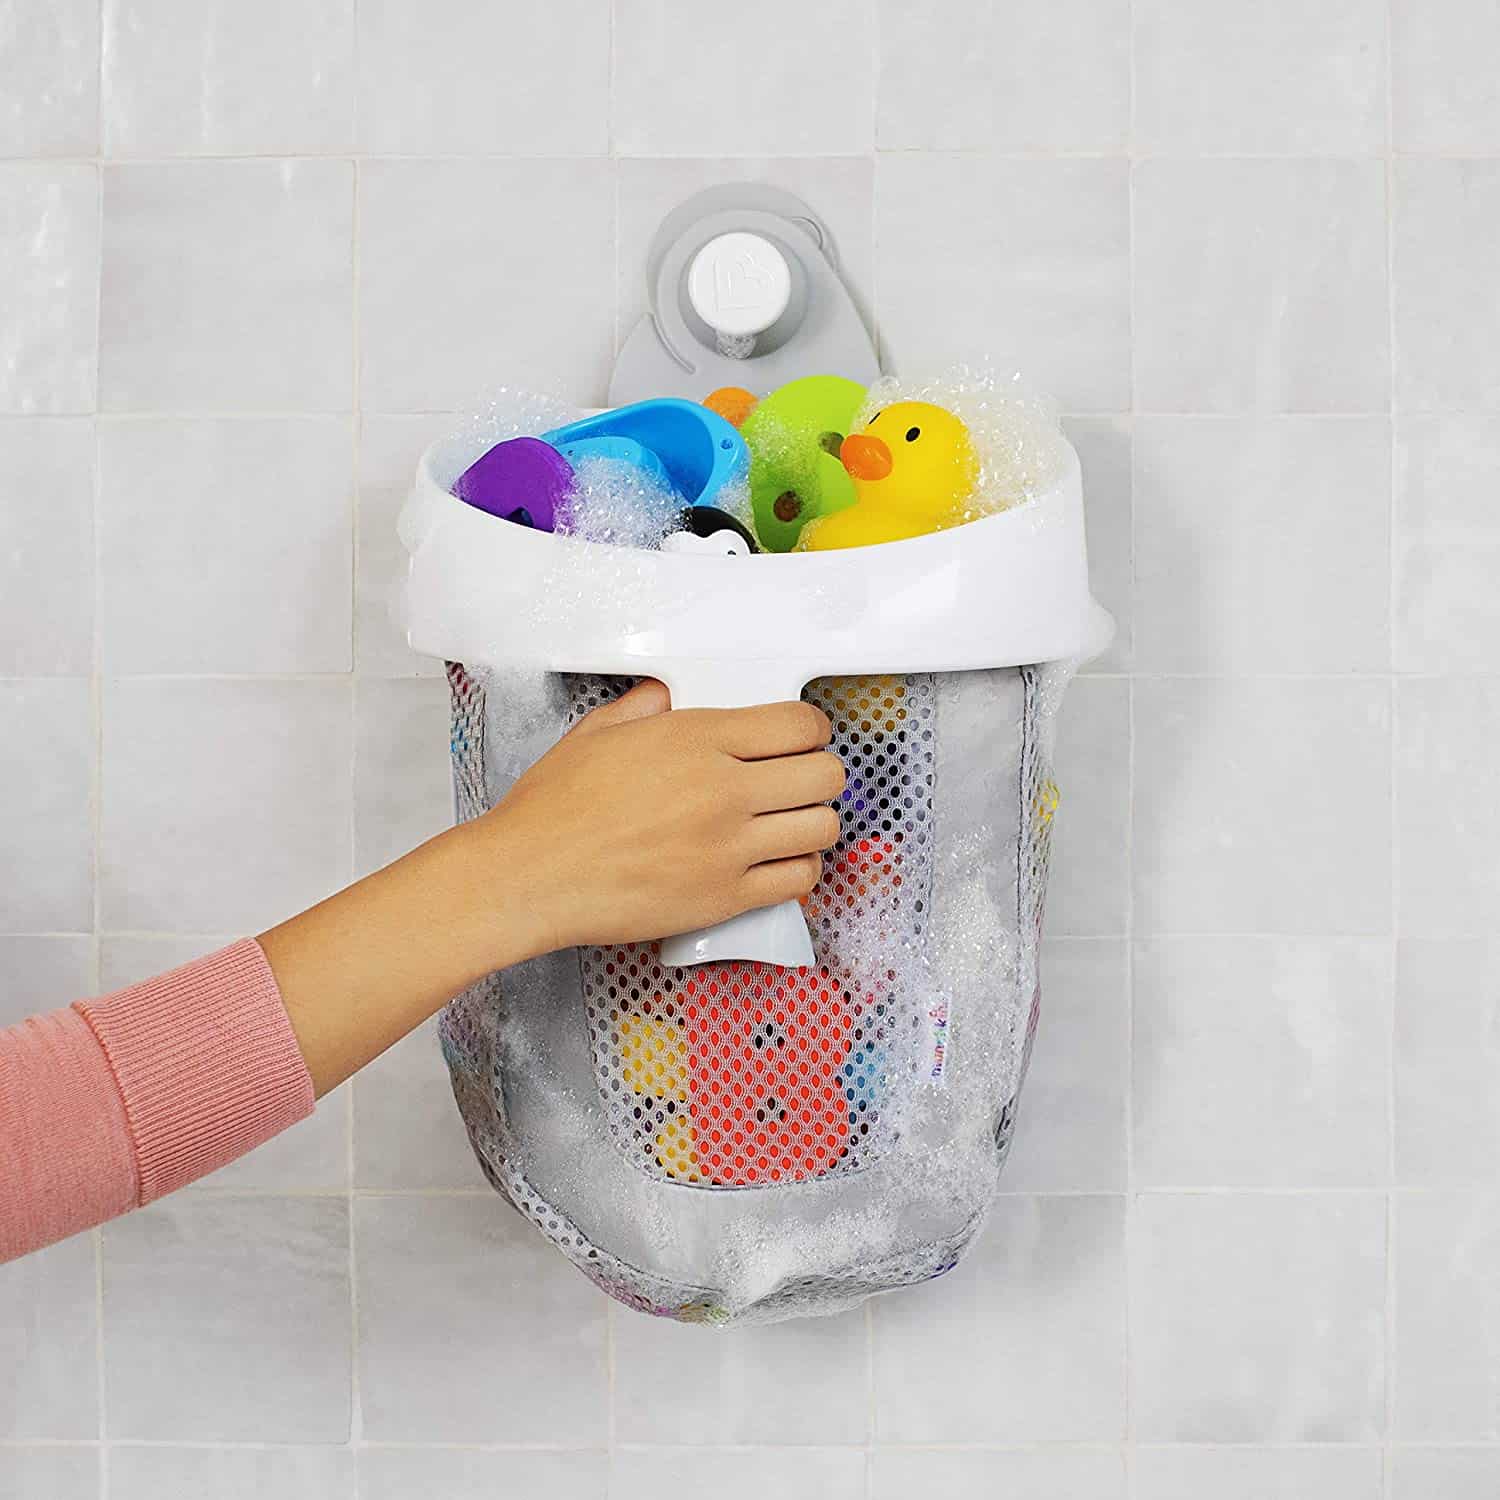 Badspeelgoed opruimen: Munchkin bath toy scoop